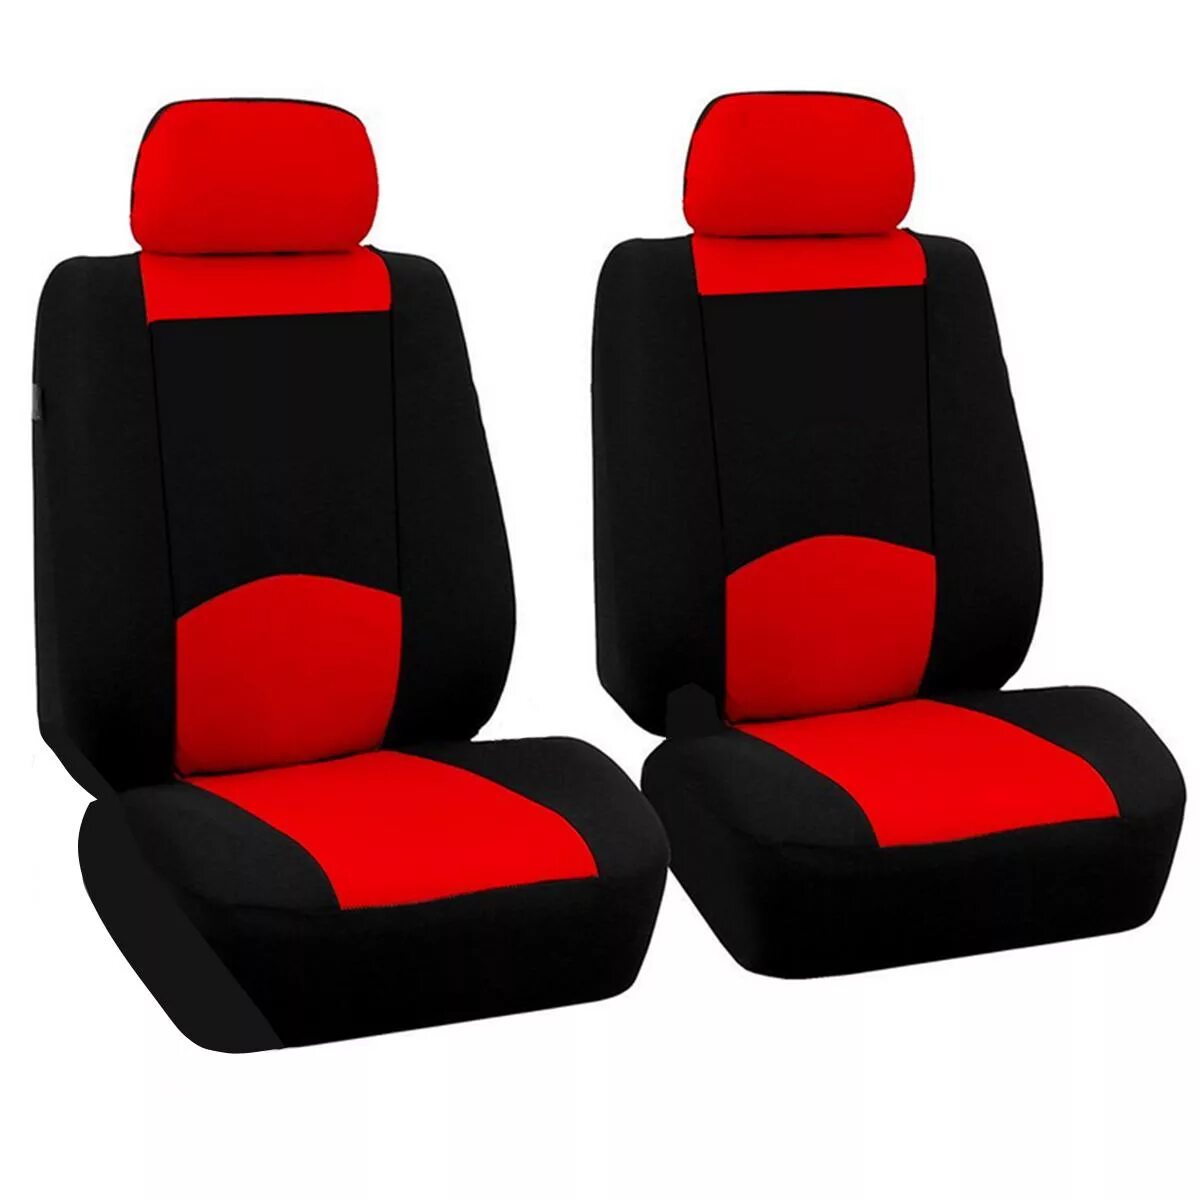 Чехлы на сиденья автомобиля. TRS-002g BK/BL. XTR-803 BK/BL (M). Чехлы Universal car Seat Cover. Леомакс автомобильные чехлы универсальные.